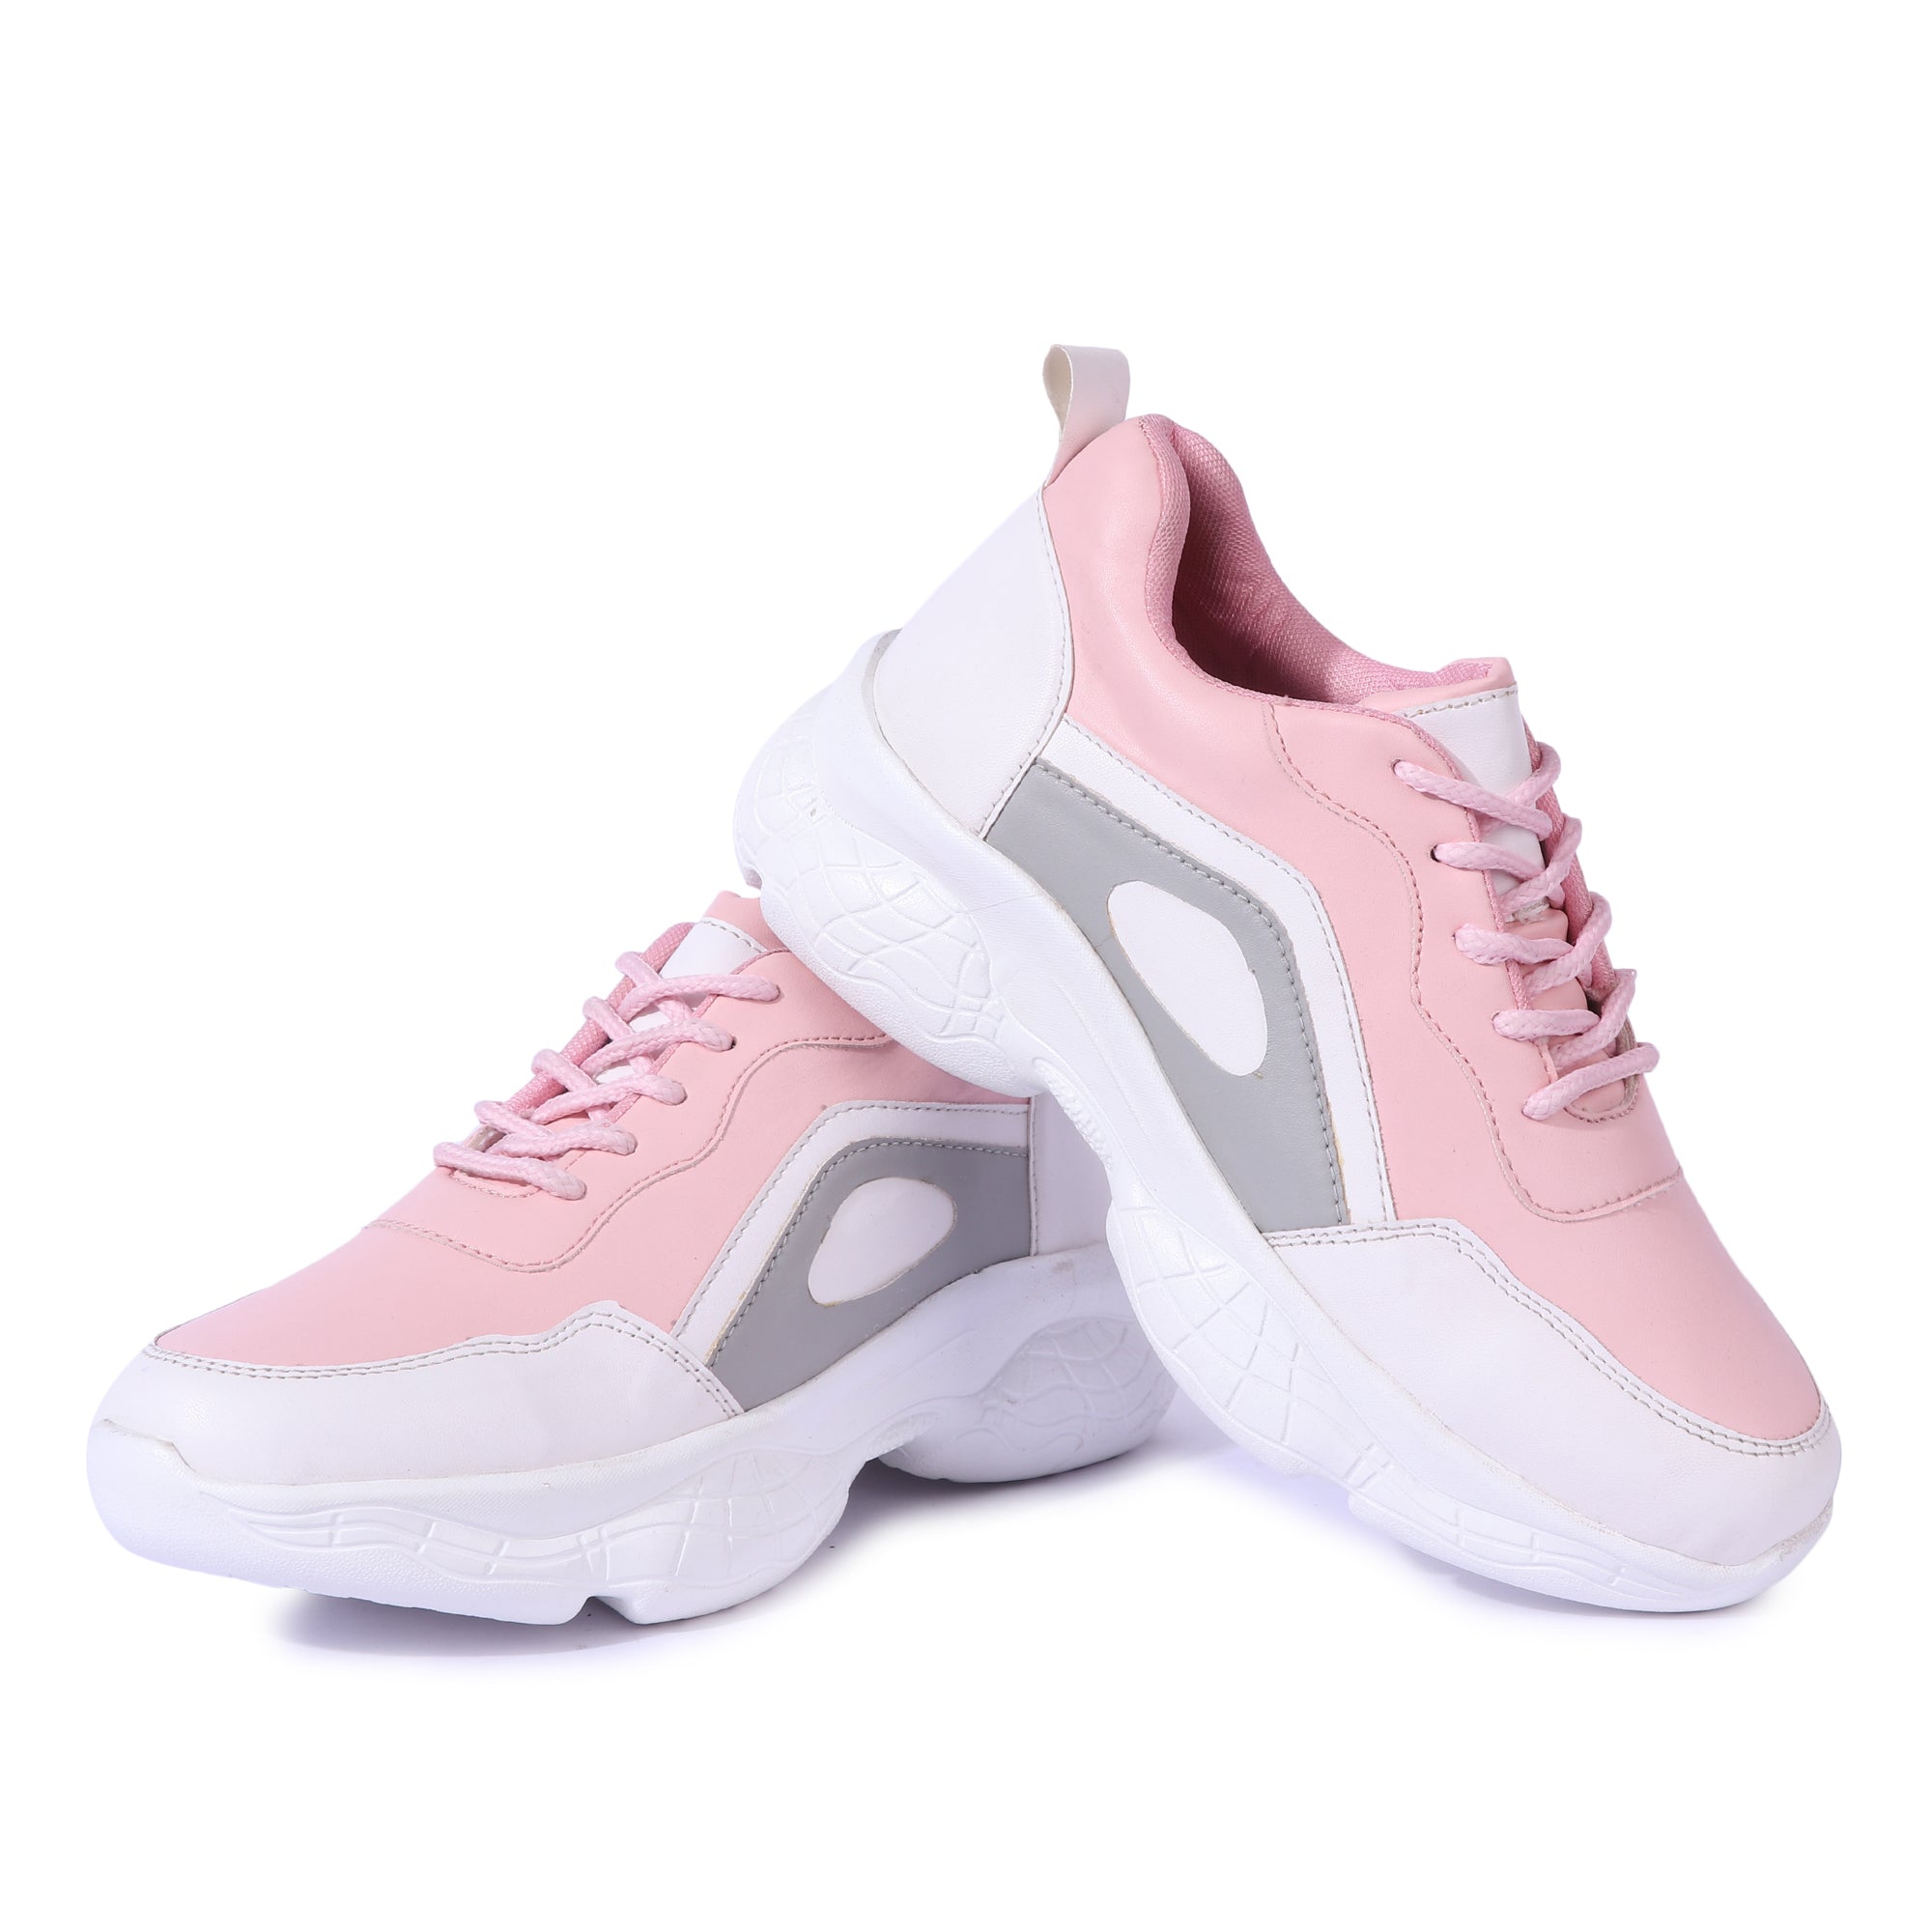 Lightweight-sole Sneakers - Dusty pink/glittery - Kids | H&M US